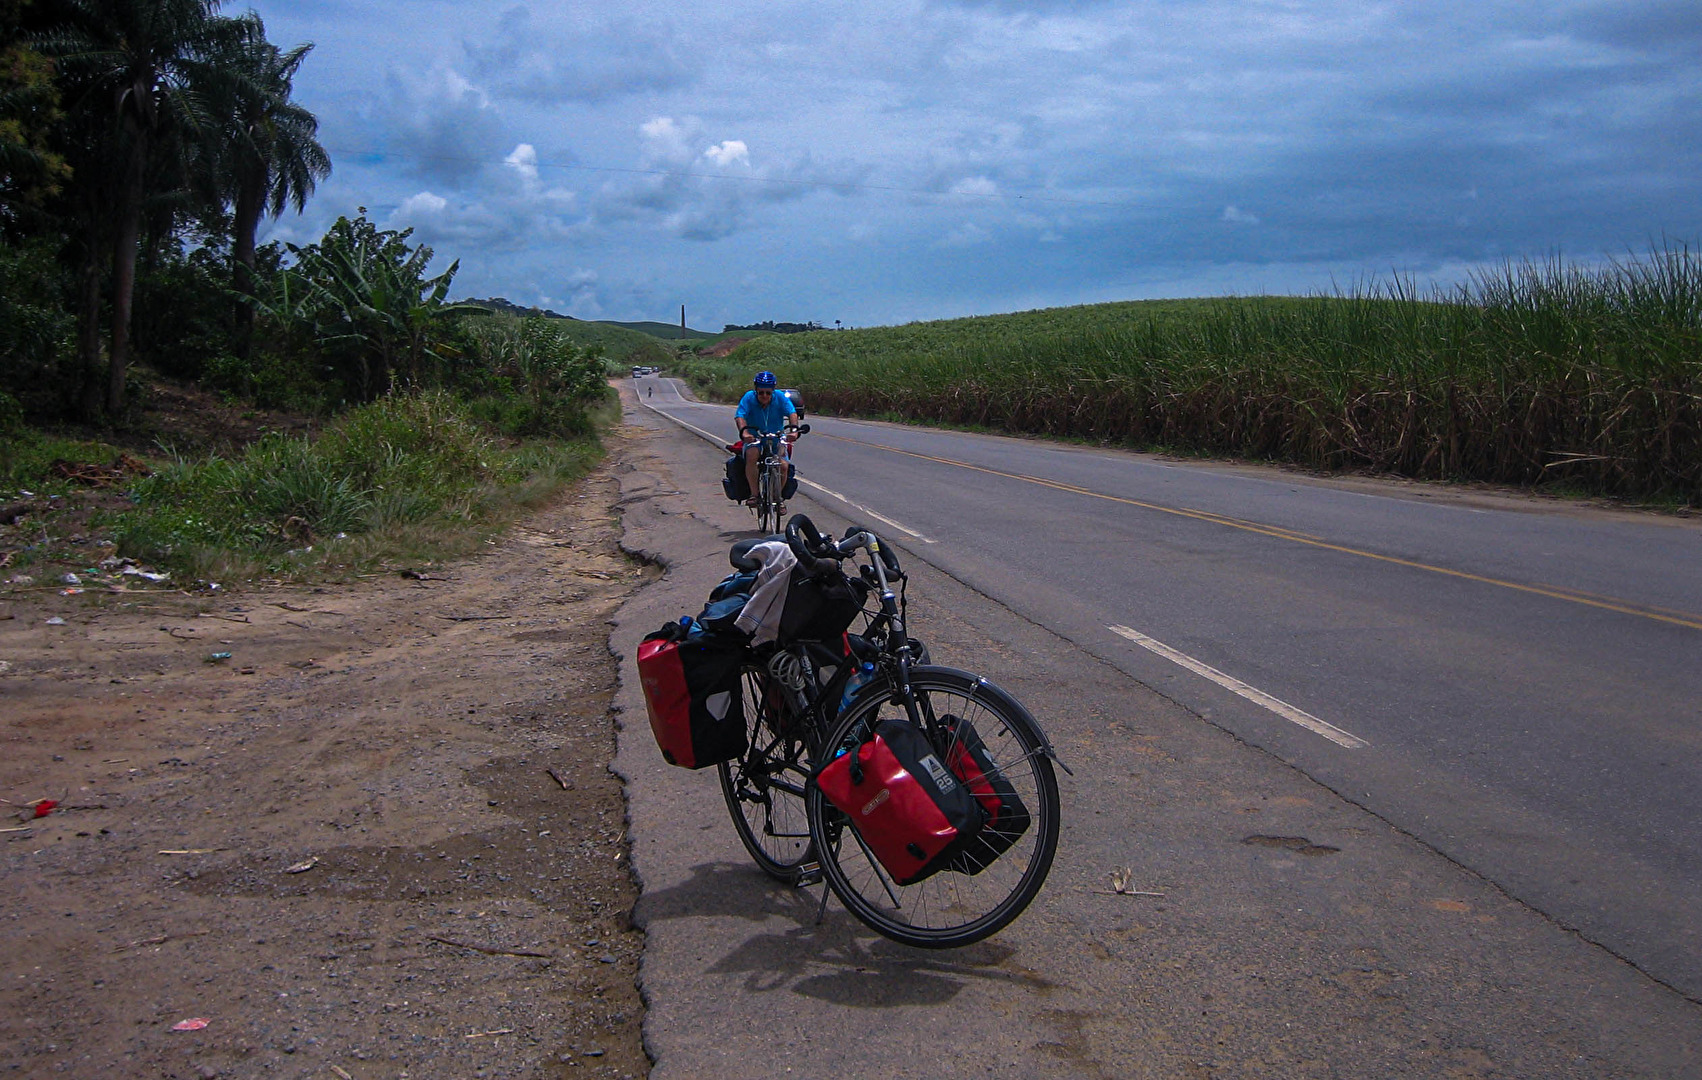 auf meiner halbjährigen trekkingradreise durch brasilien. hier auf ofener landstrasse durch die zuck